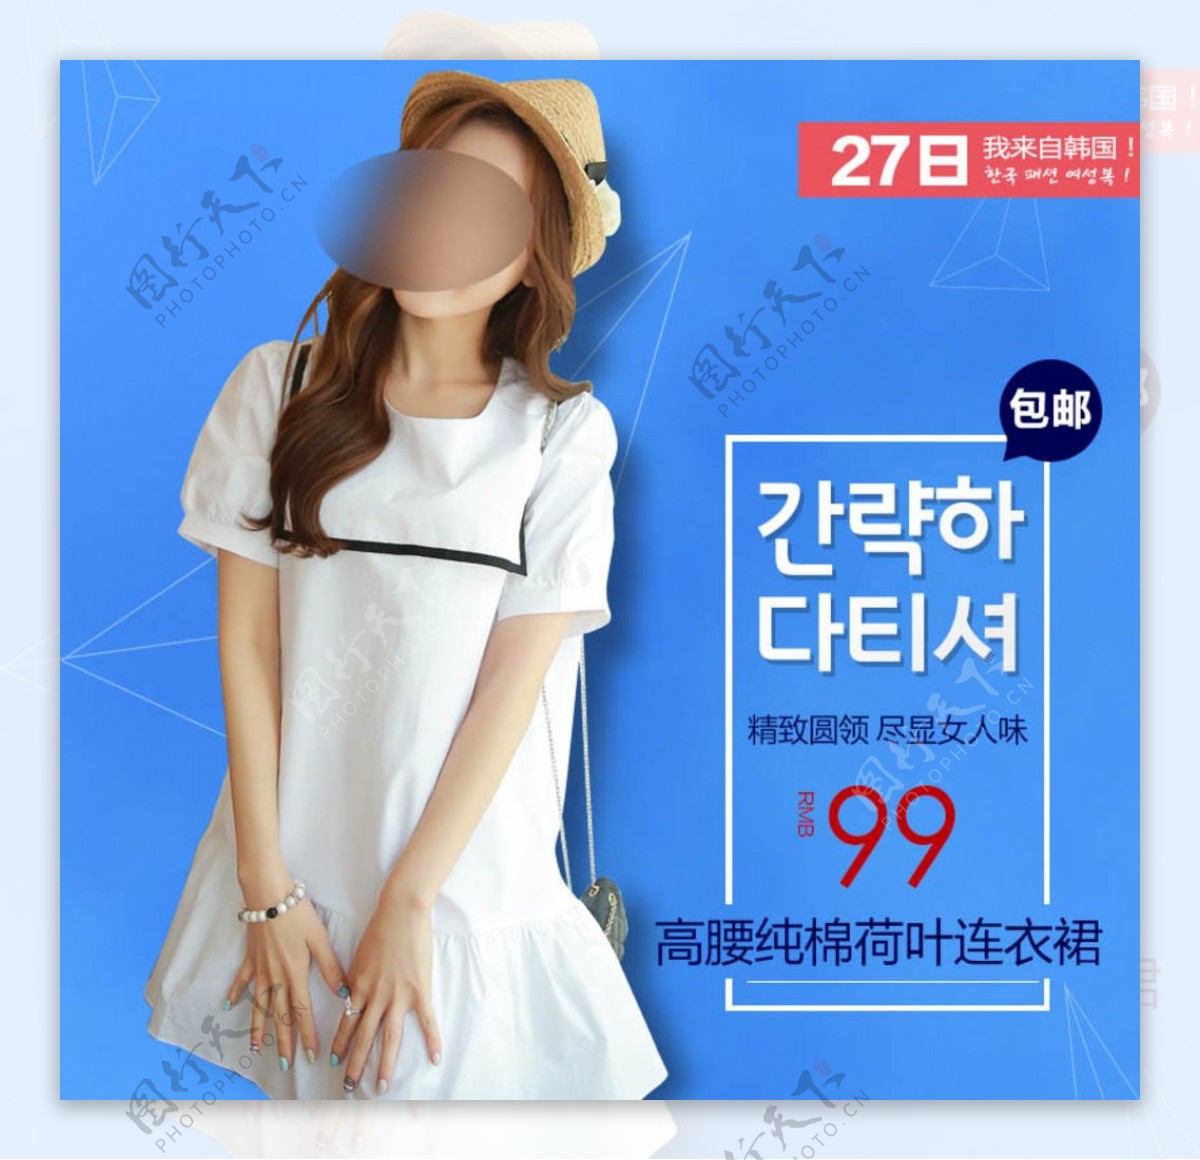 淘宝韩版女装直通车推广图模版图片